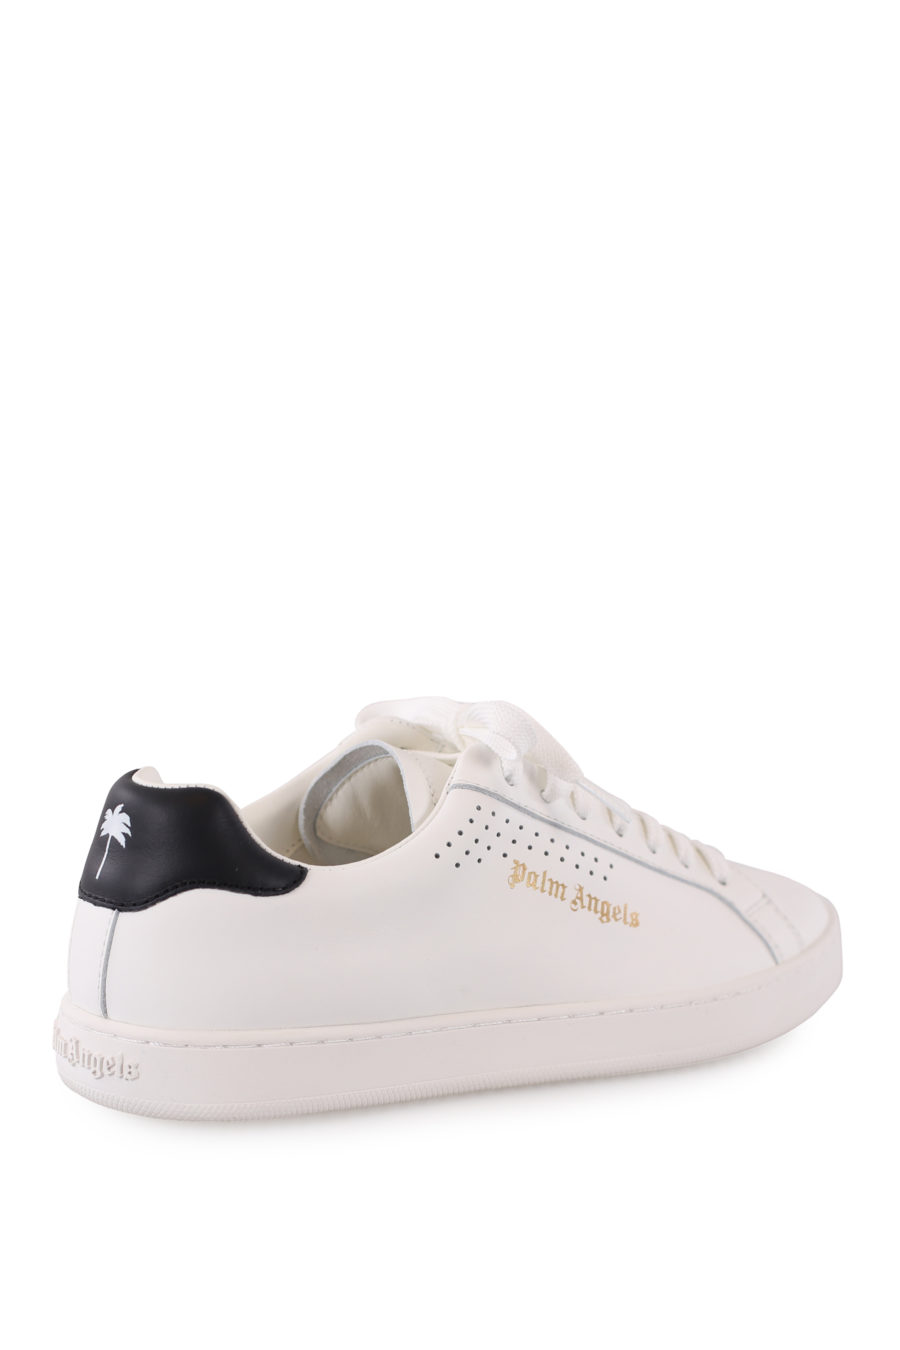 Zapatillas blancas con logo dorado - IMG 9050